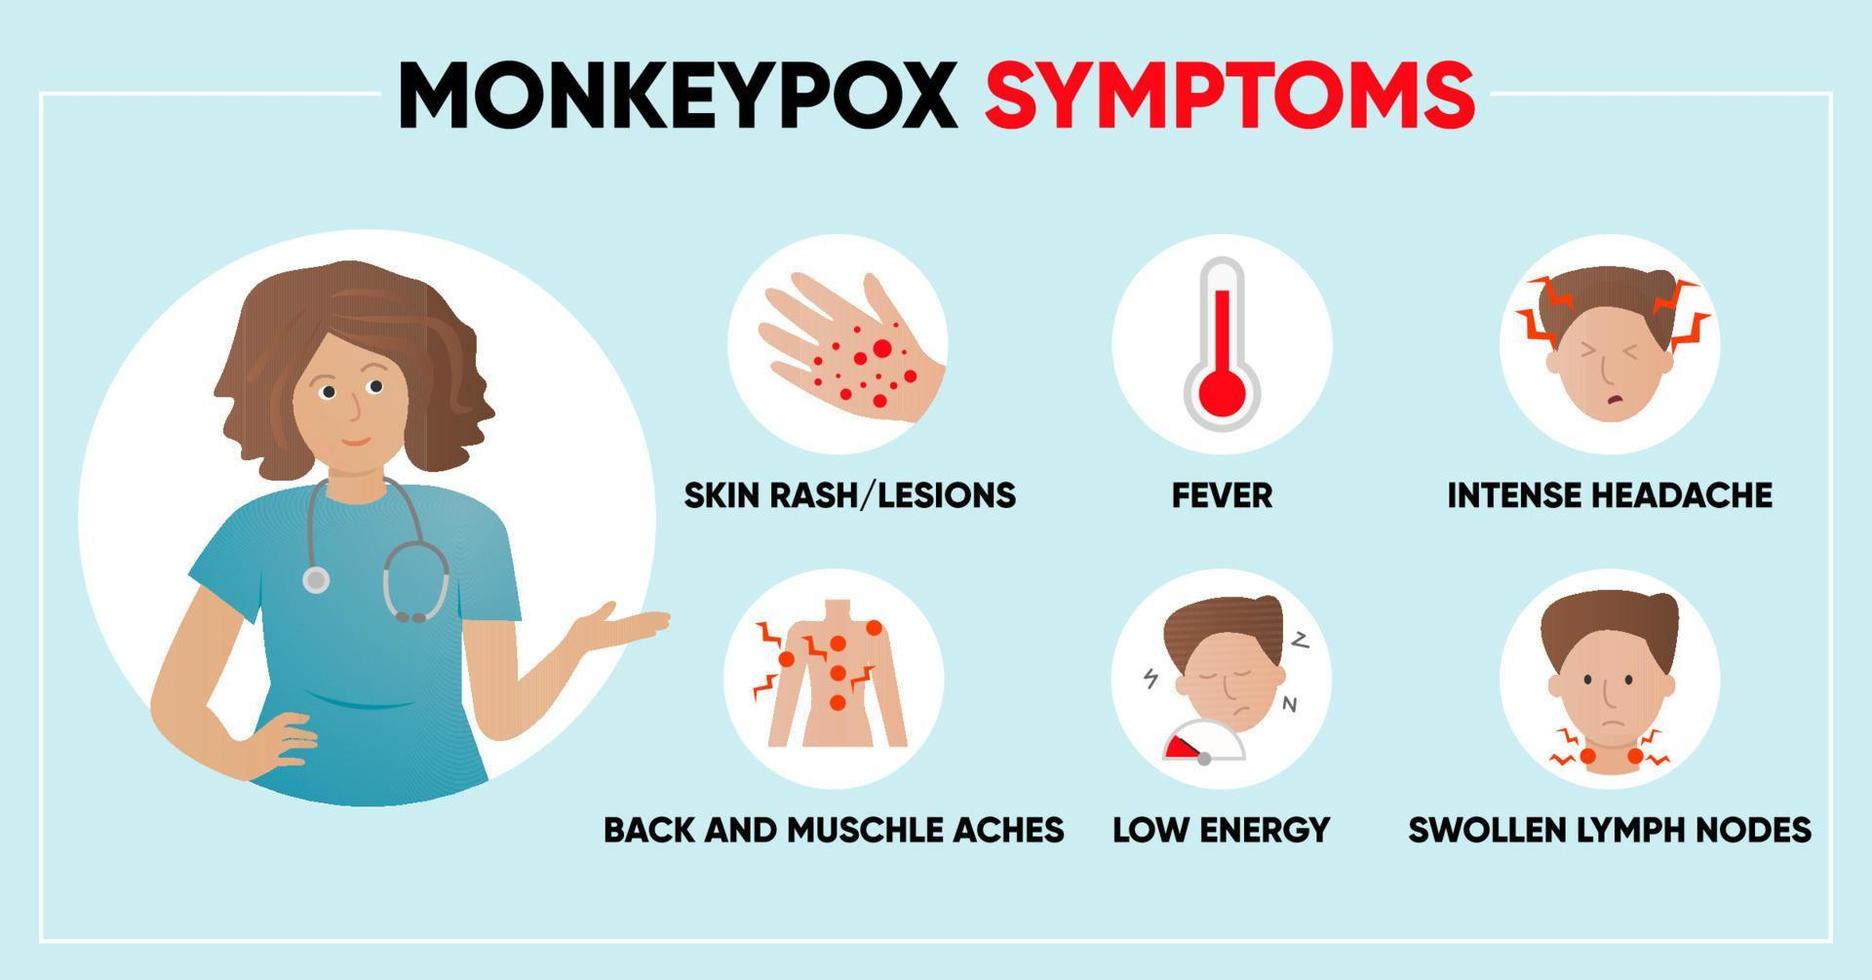 Symptome des Affenpockenvirus einfache Infografik. Poster für soziale Medien, Artikel und Flyer. Vektor-Illustration. vektor